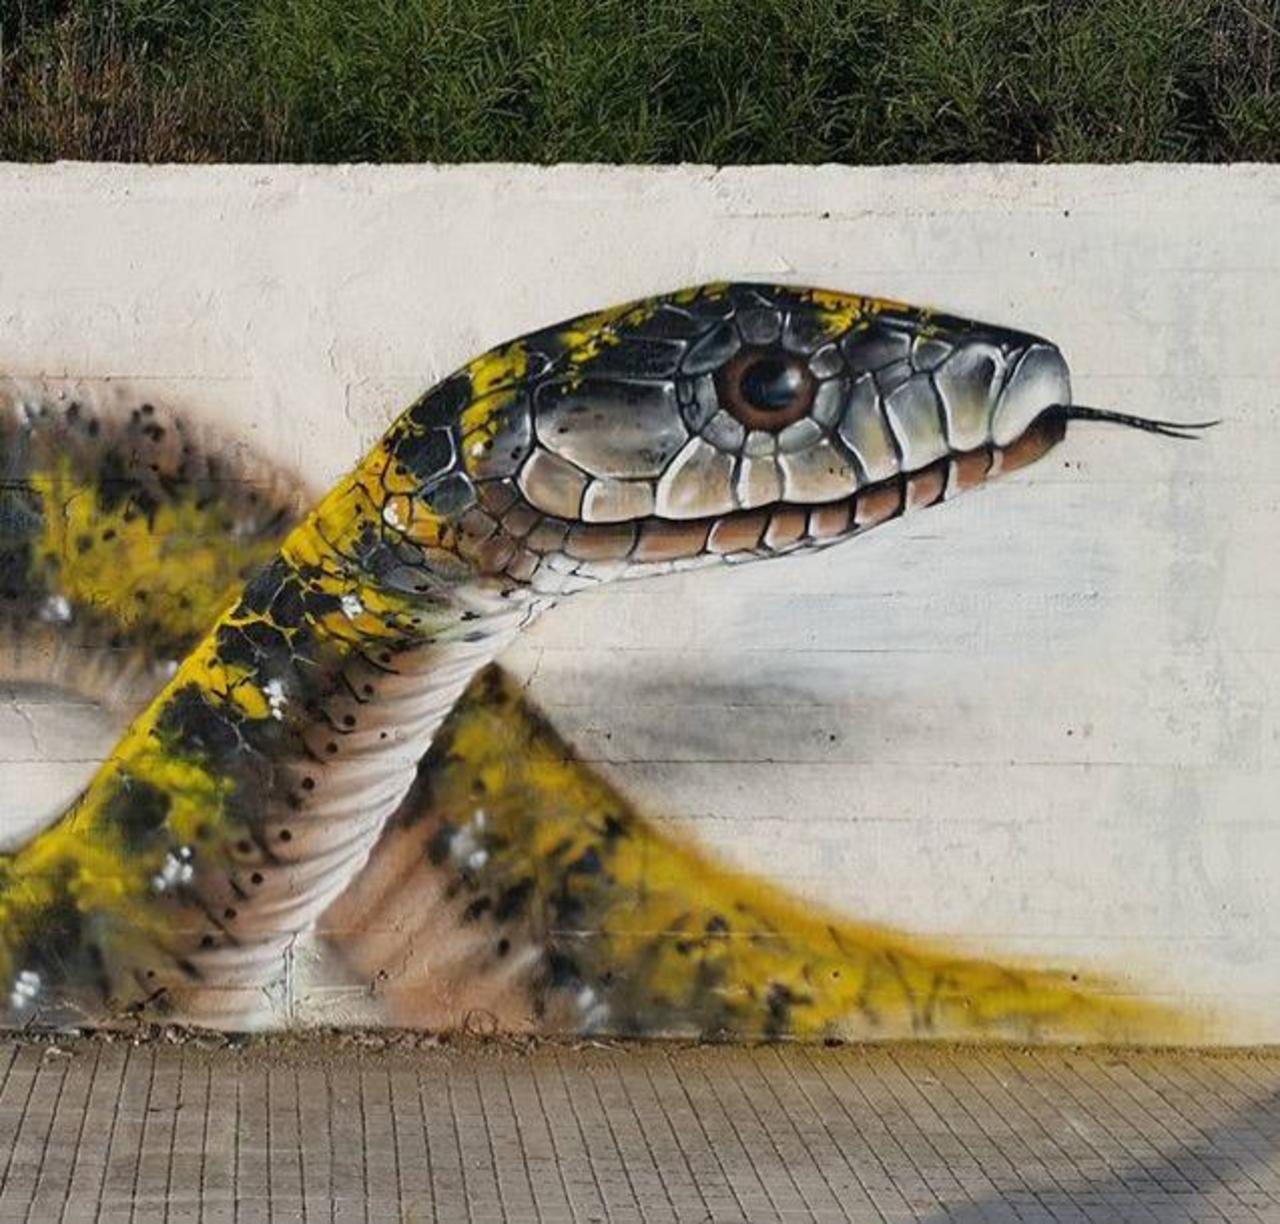 Street Art by Cosimocheone 

#art #graffiti #mural #streetart http://t.co/gSbLWsc1Nz